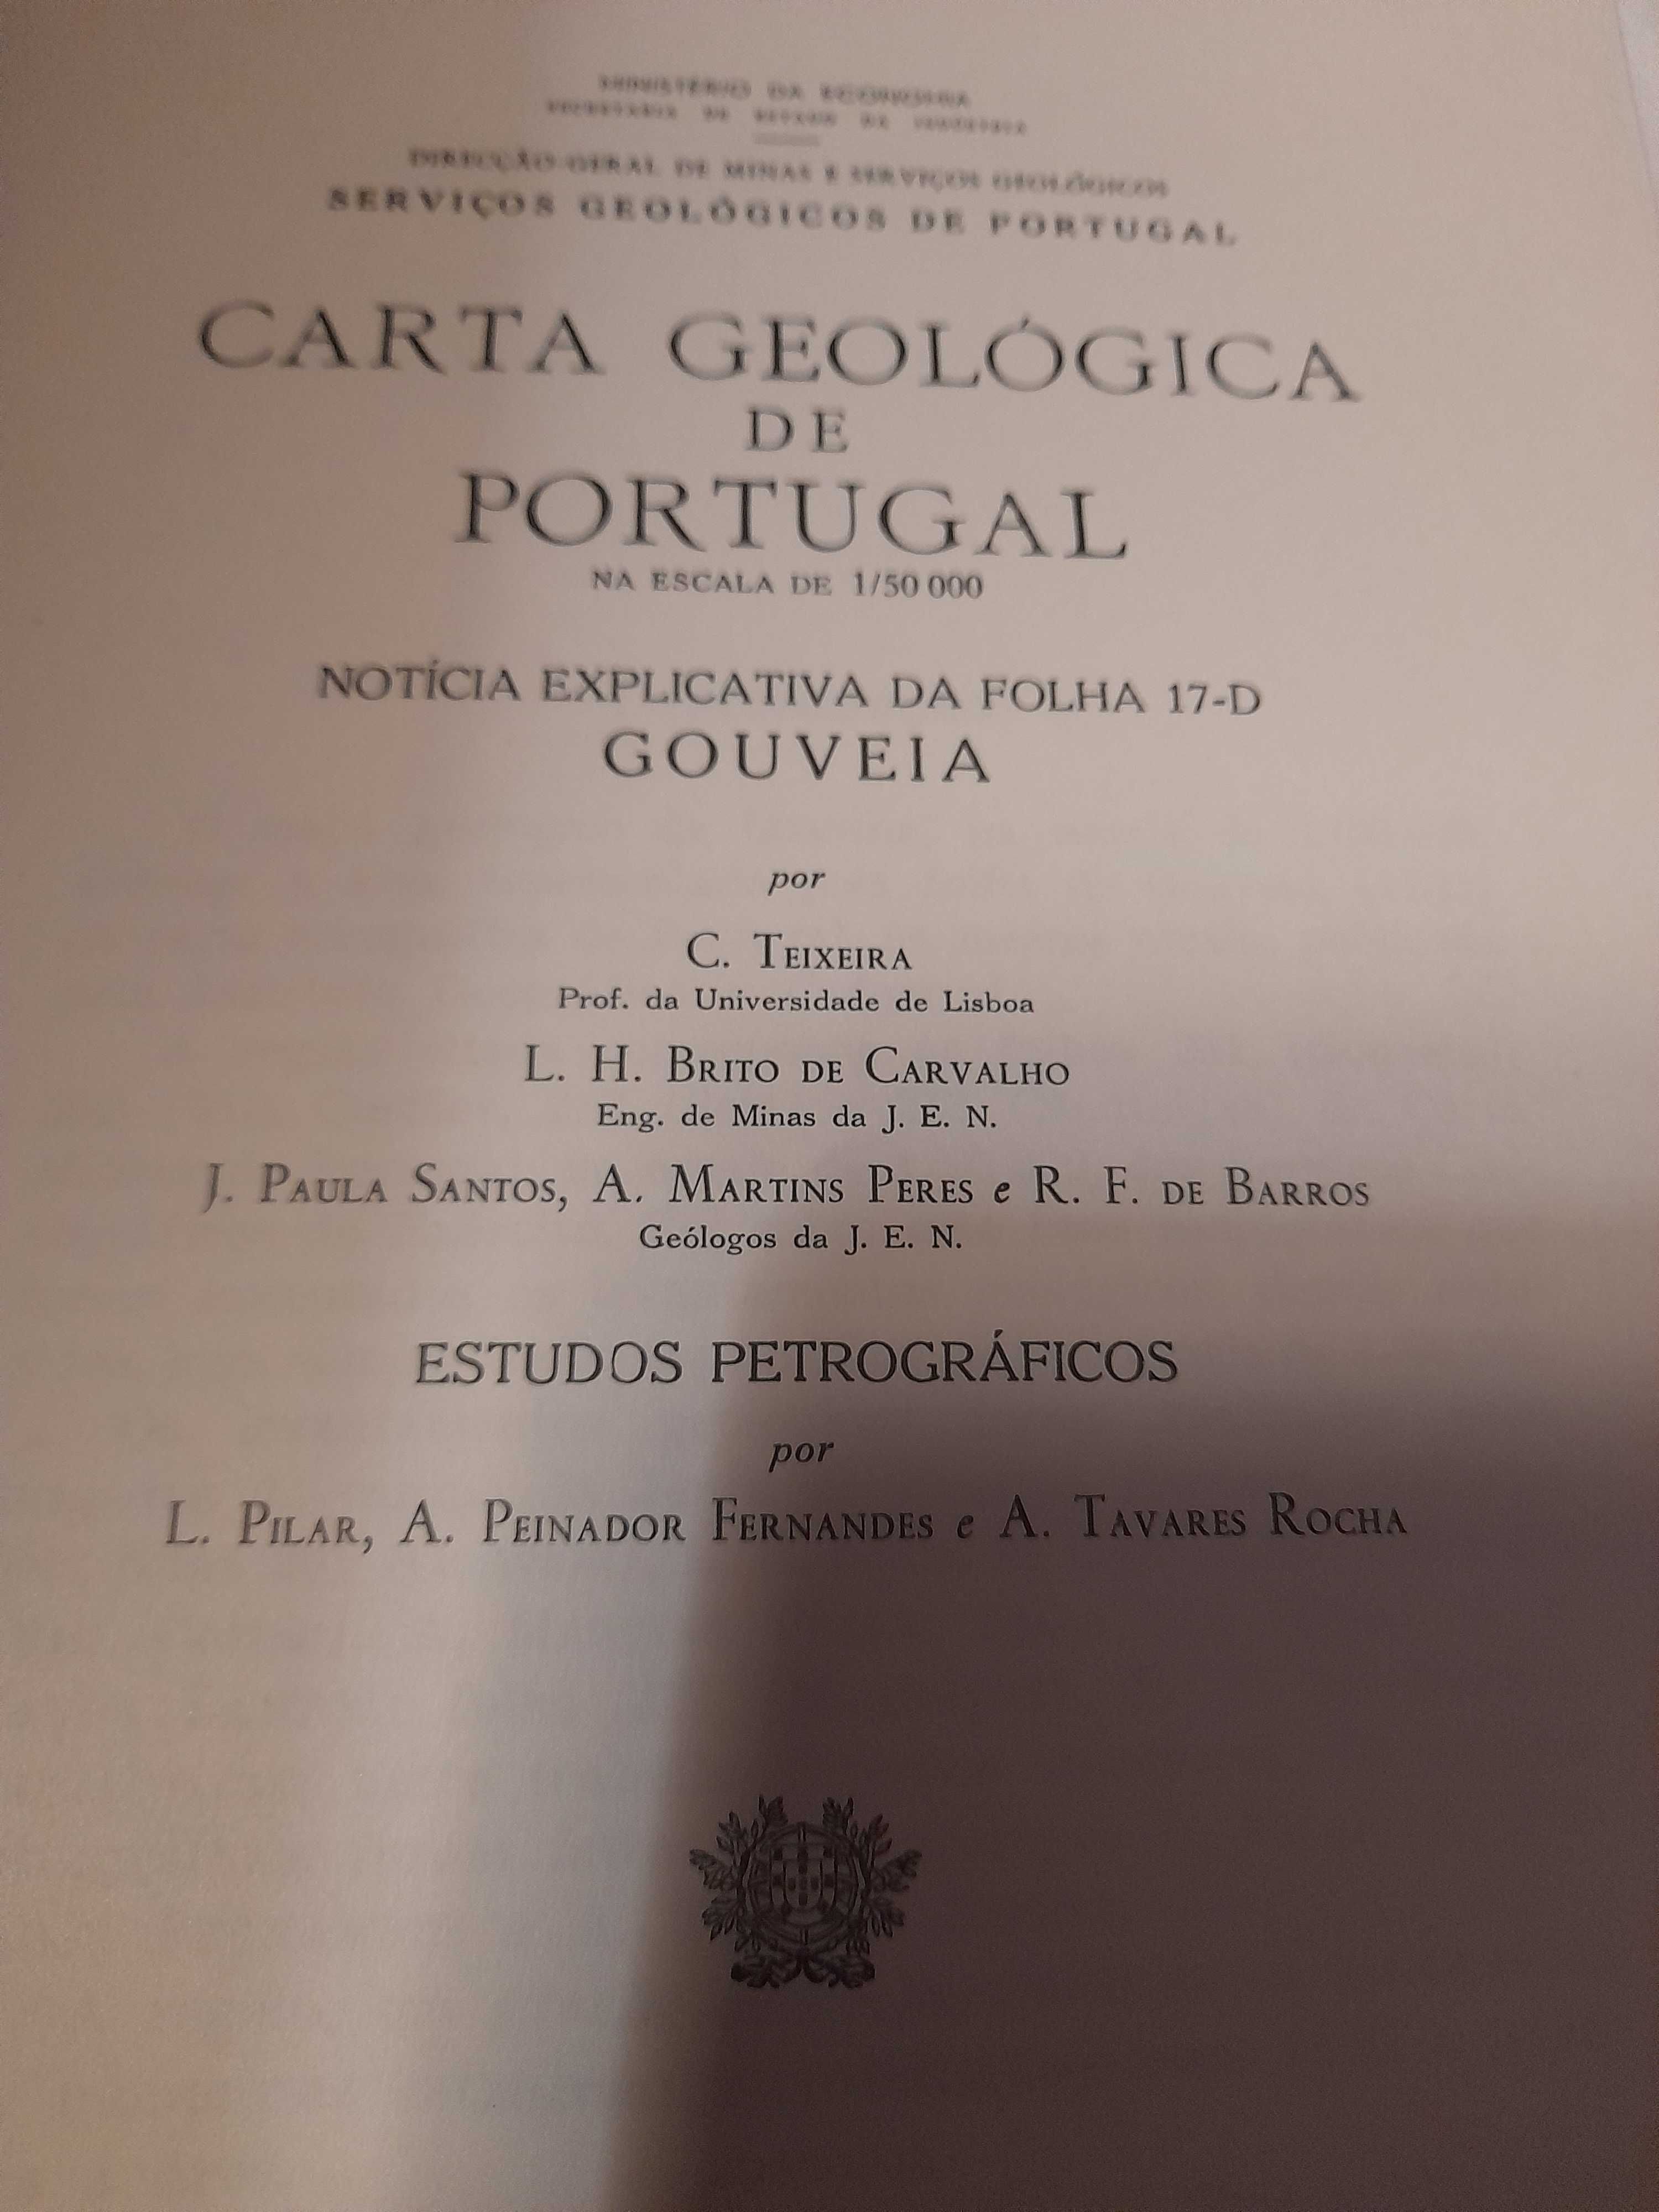 Carta geológica de Portugal-Gouveia